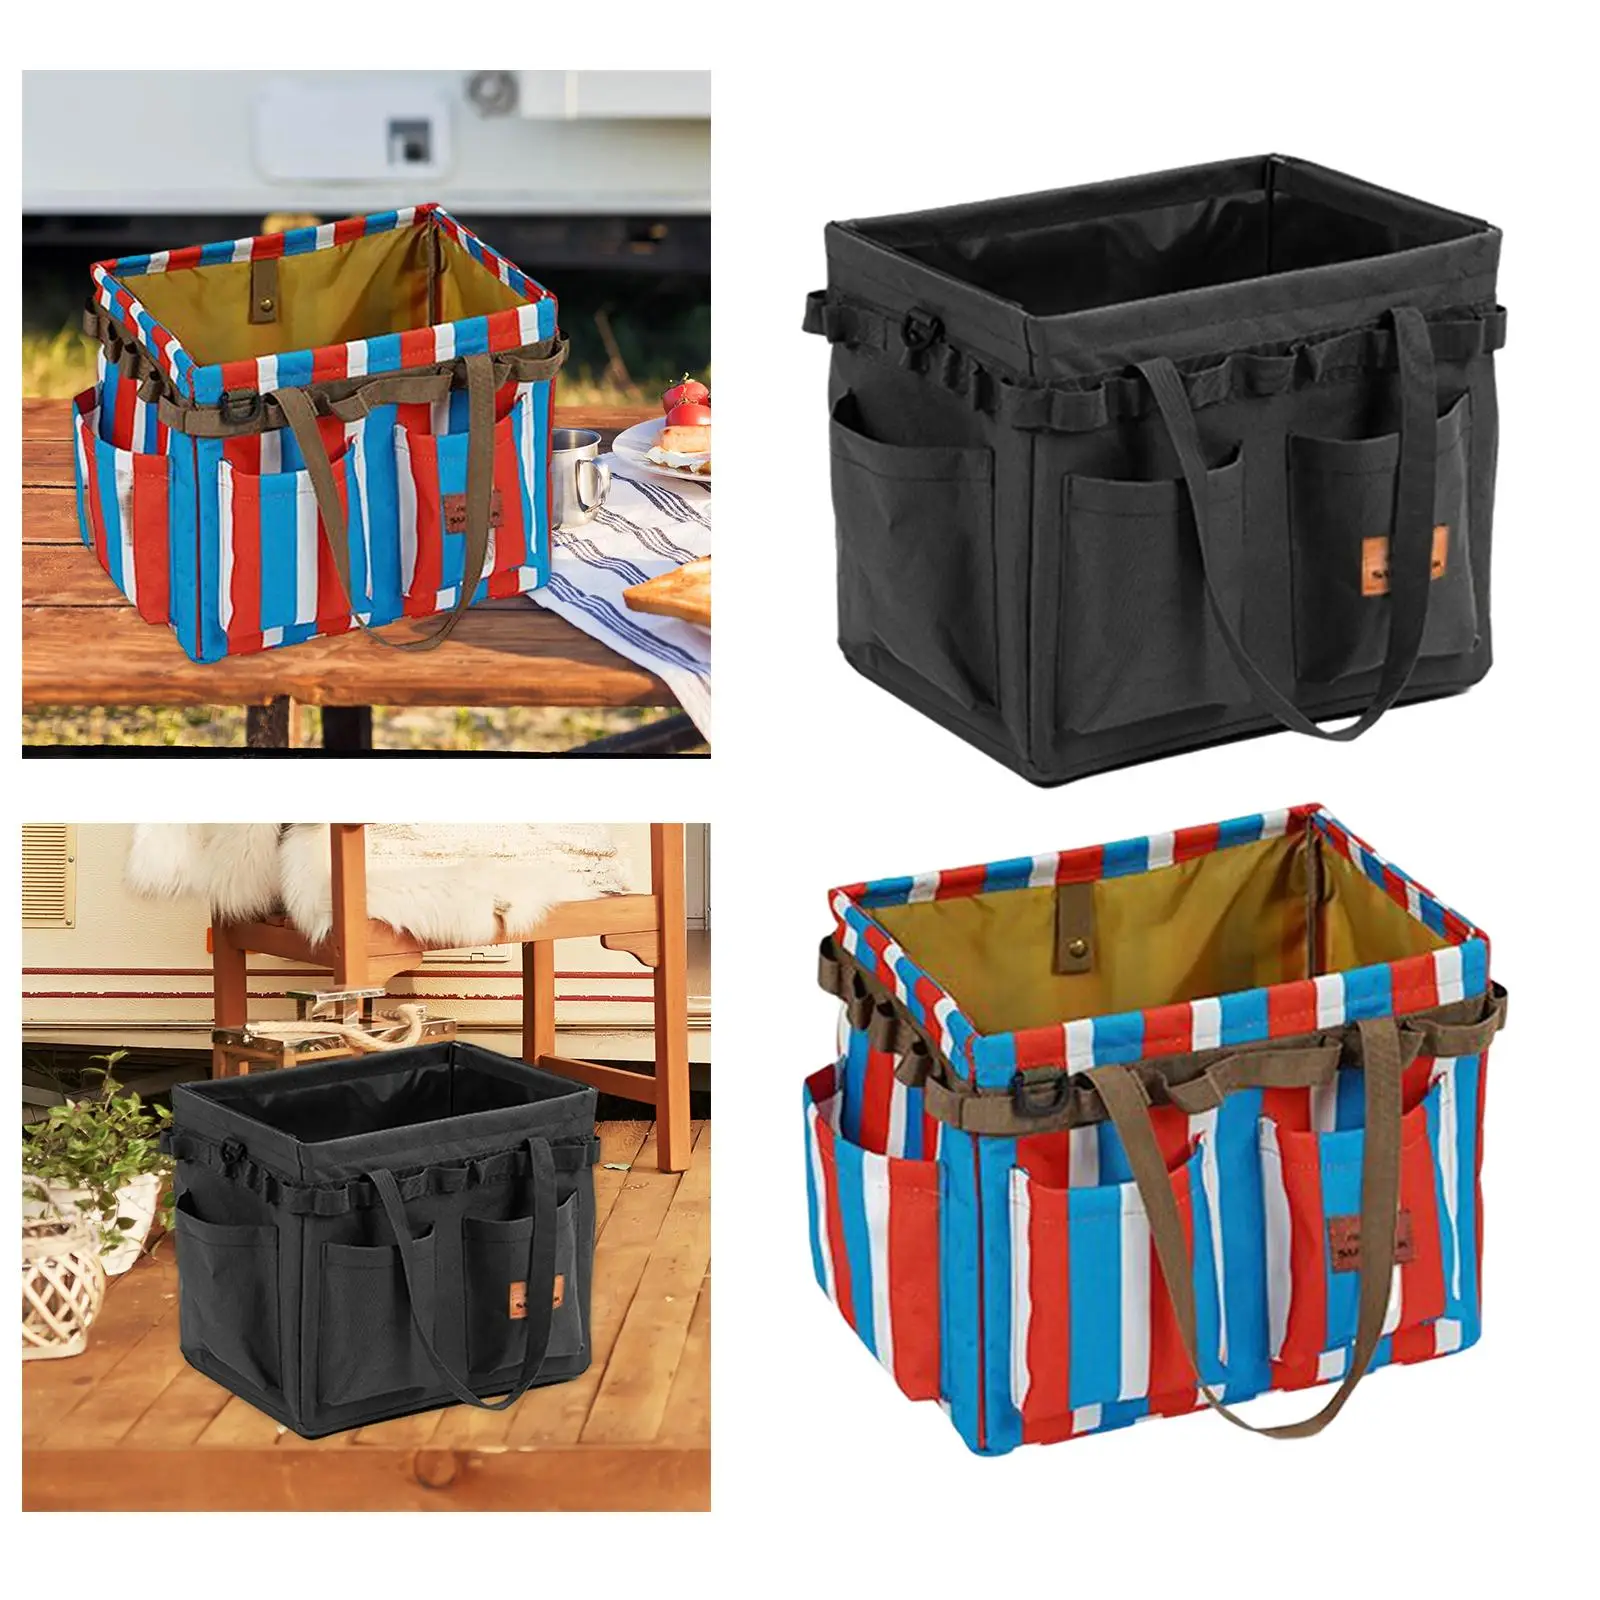 Multifunctional Utility Bag Tool Organizer Large Basket Collapsible Camping